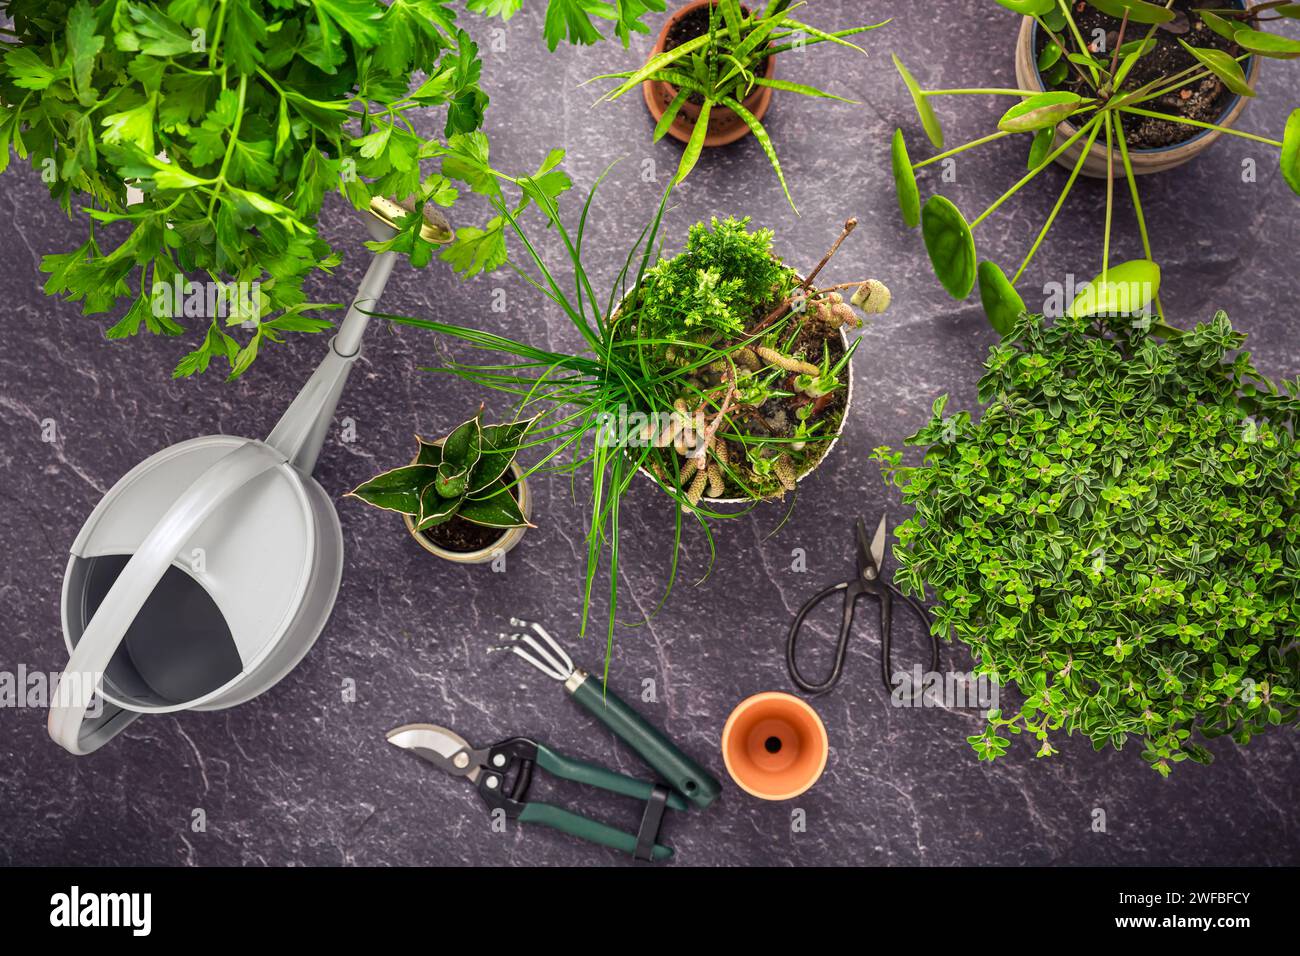 Transplantation de plantes et d'herbes, concept de jardinage à la maison. Assortiment de plantes d'intérieur et d'herbes avec des outils de jardinage. Banque D'Images